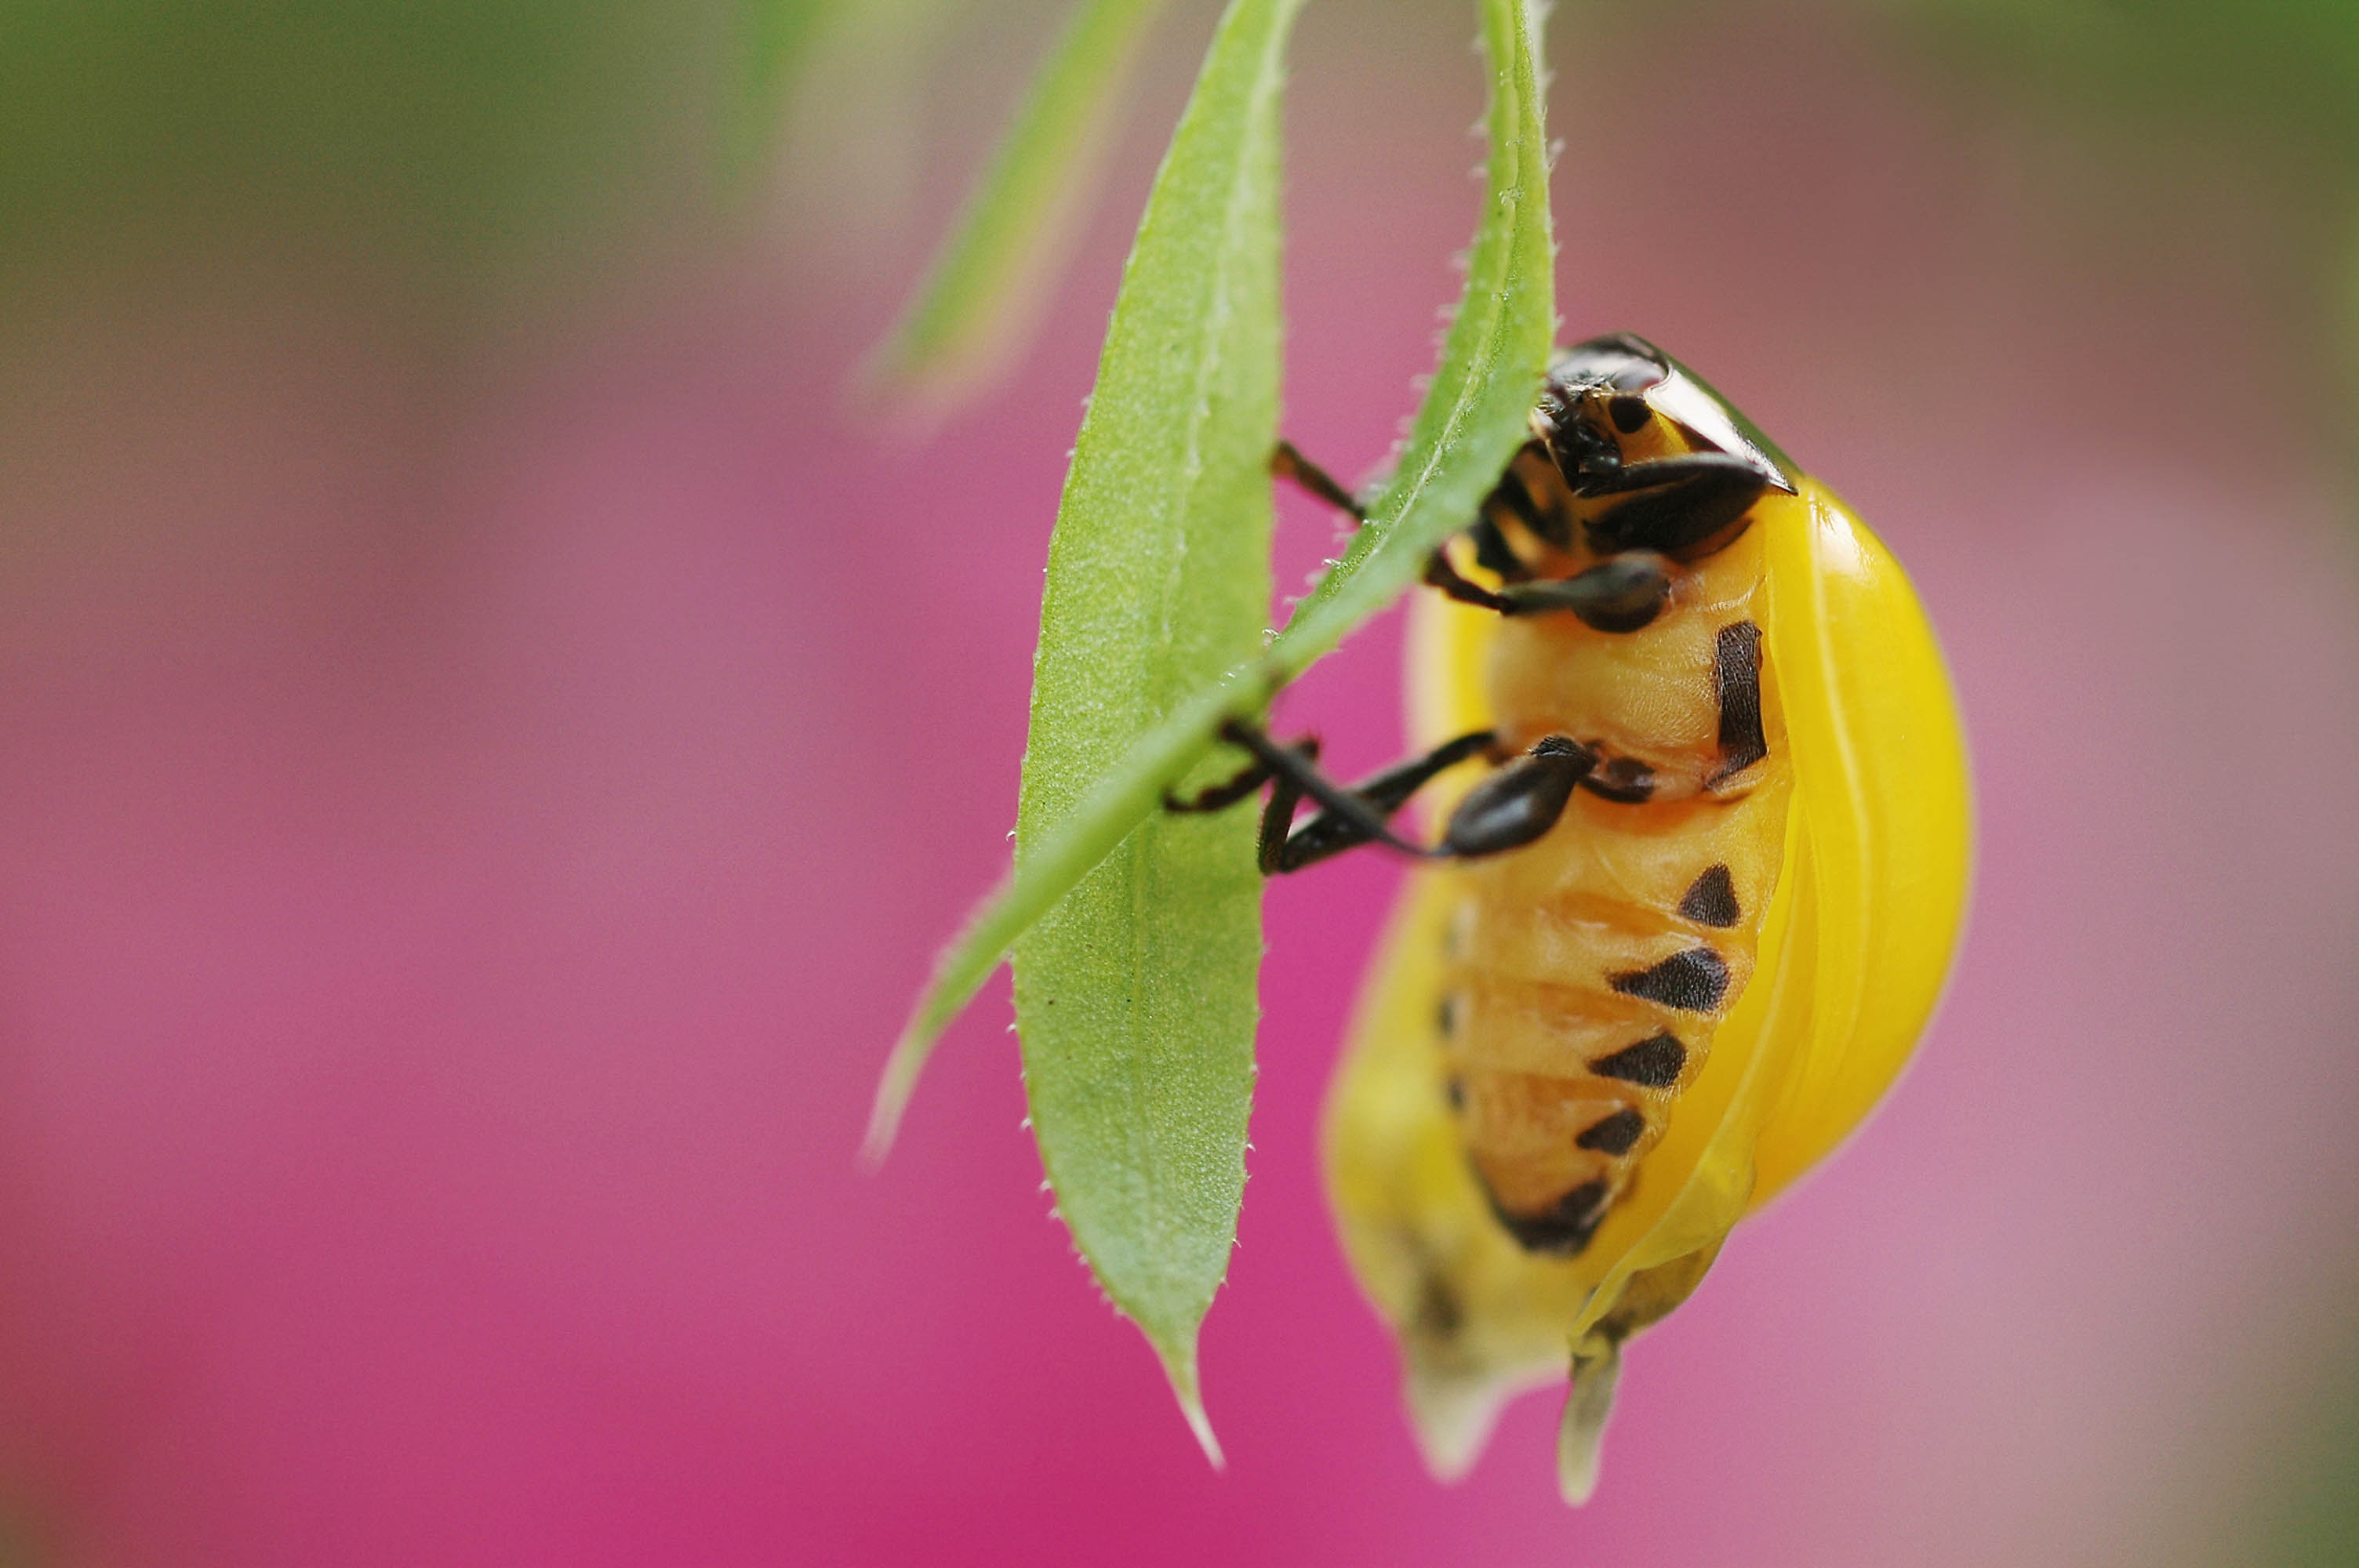 ナナホシテントウの 幸せ ジンクス 卵や幼虫も紹介 Q Aも 虫の写真と生態なら昆虫写真図鑑 ムシミル